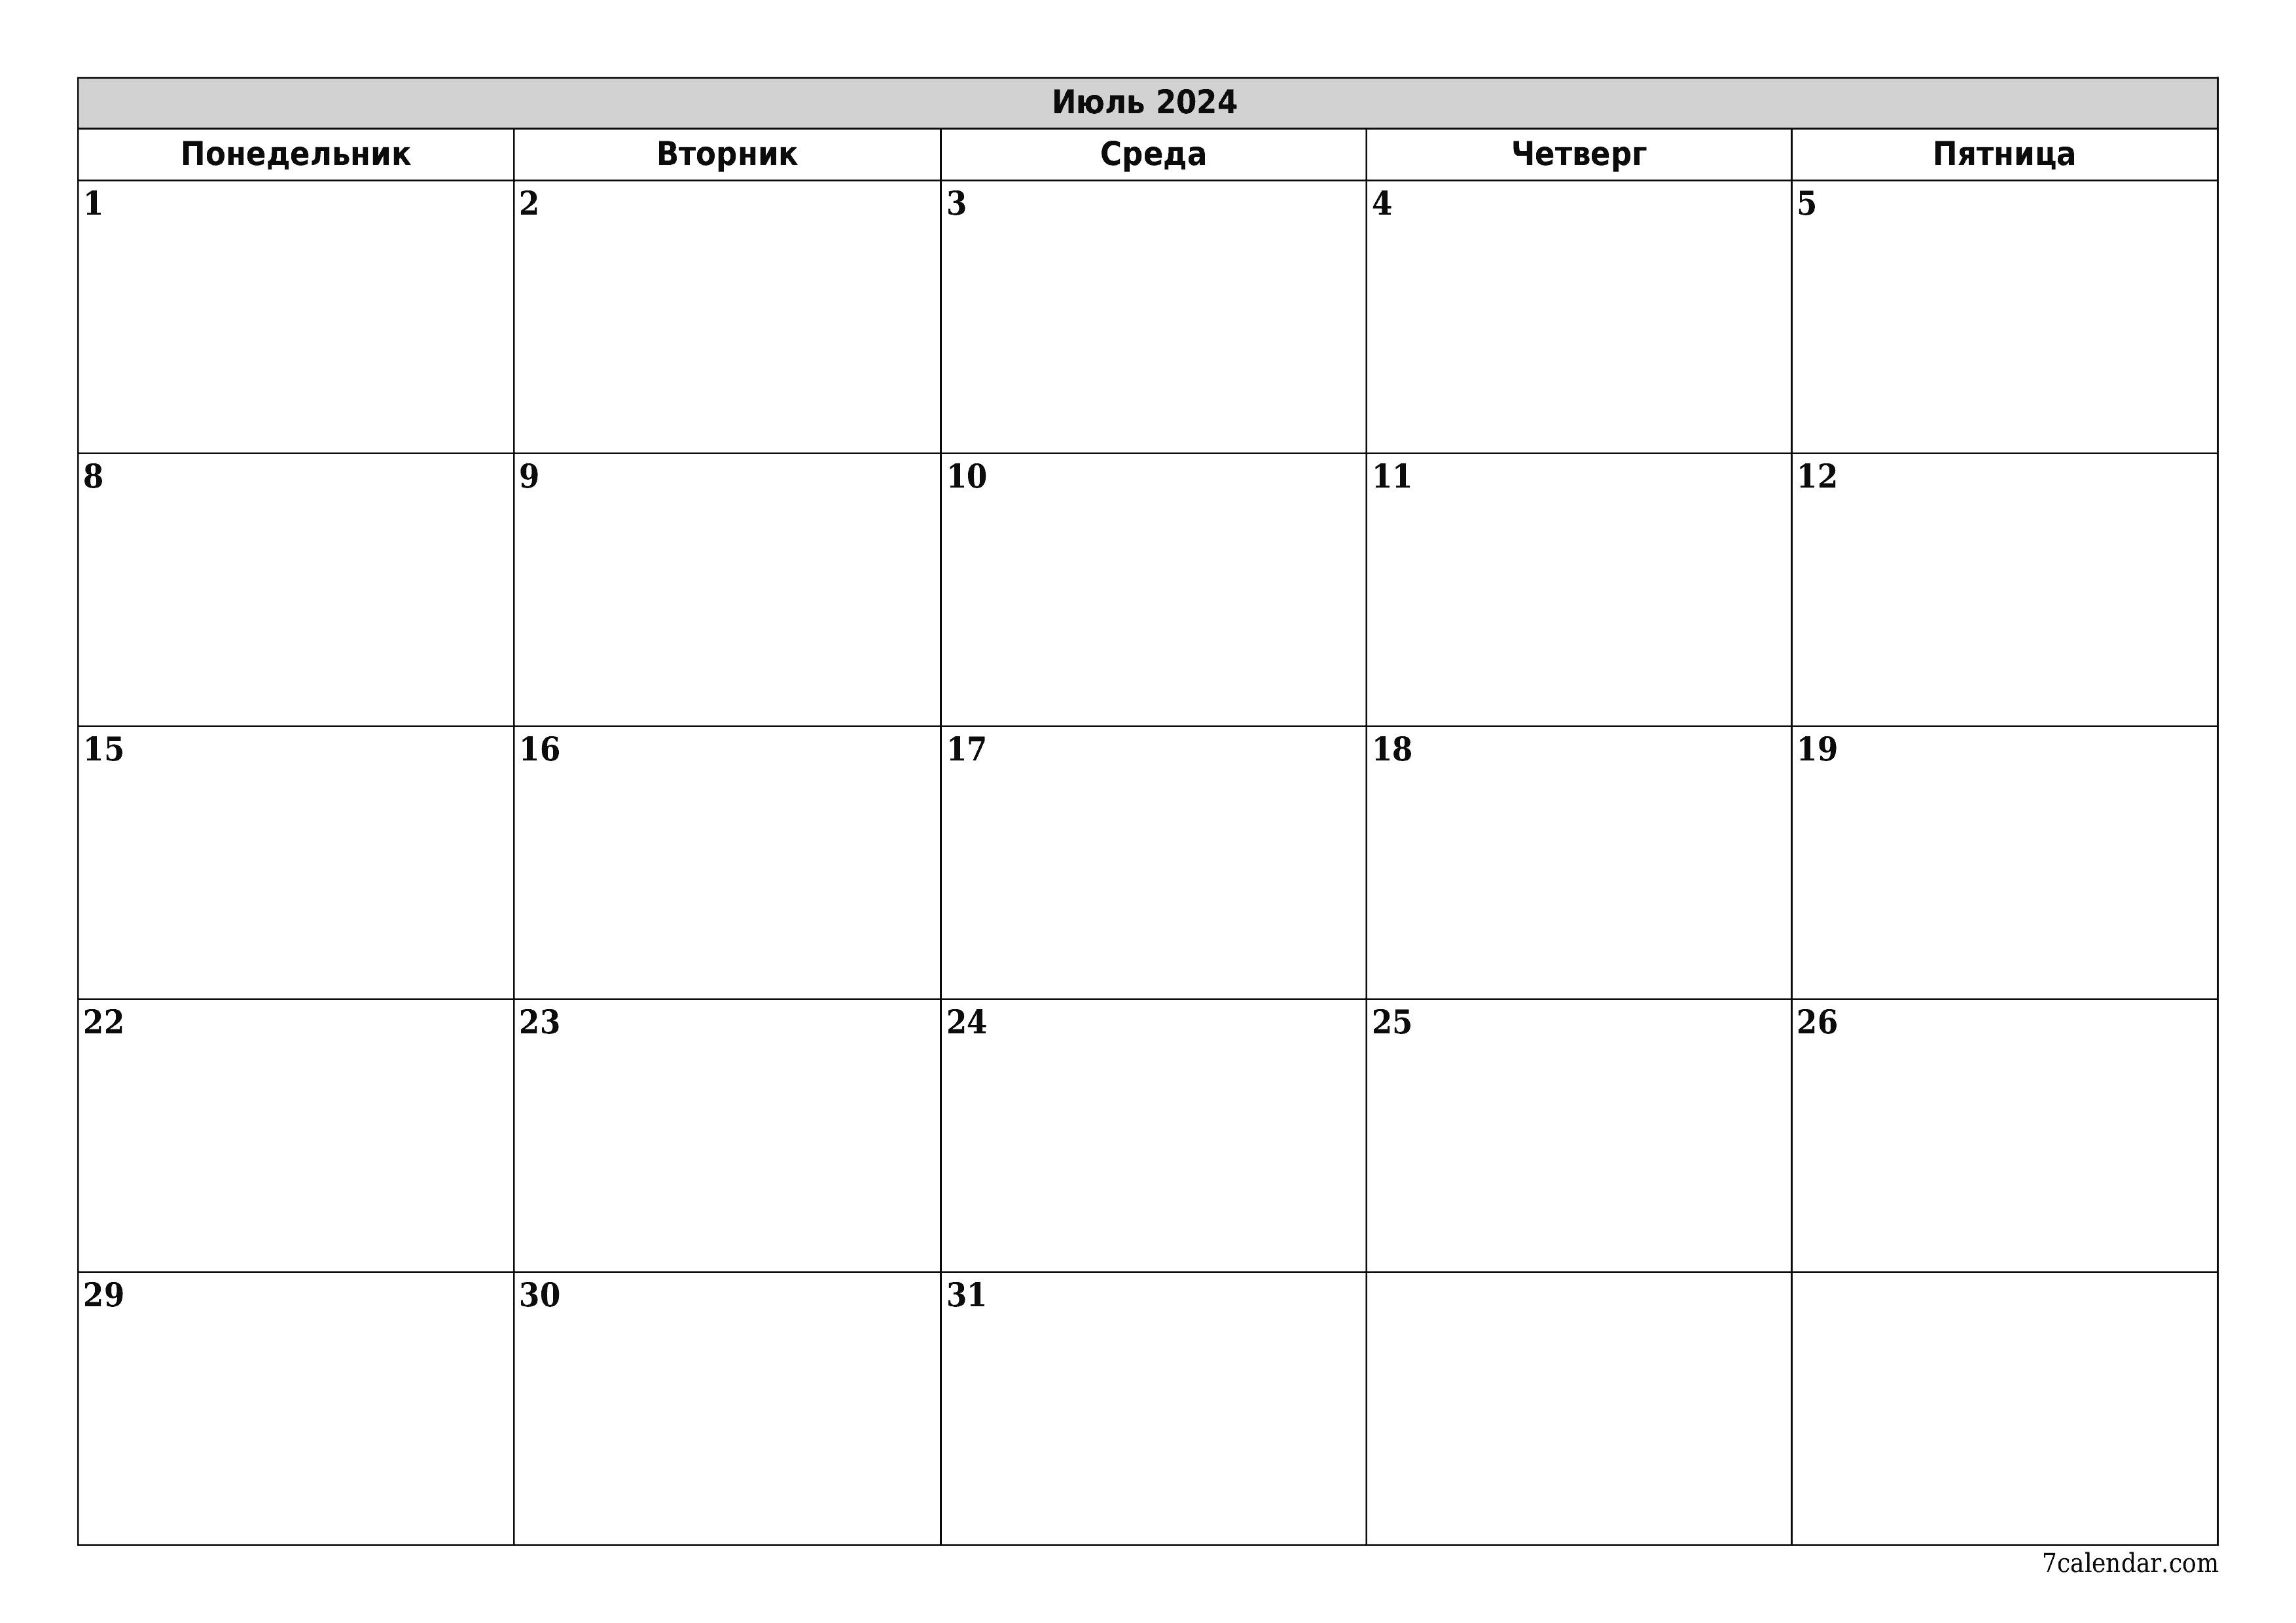 Пустой ежемесячный календарь-планер на месяц Июль 2024